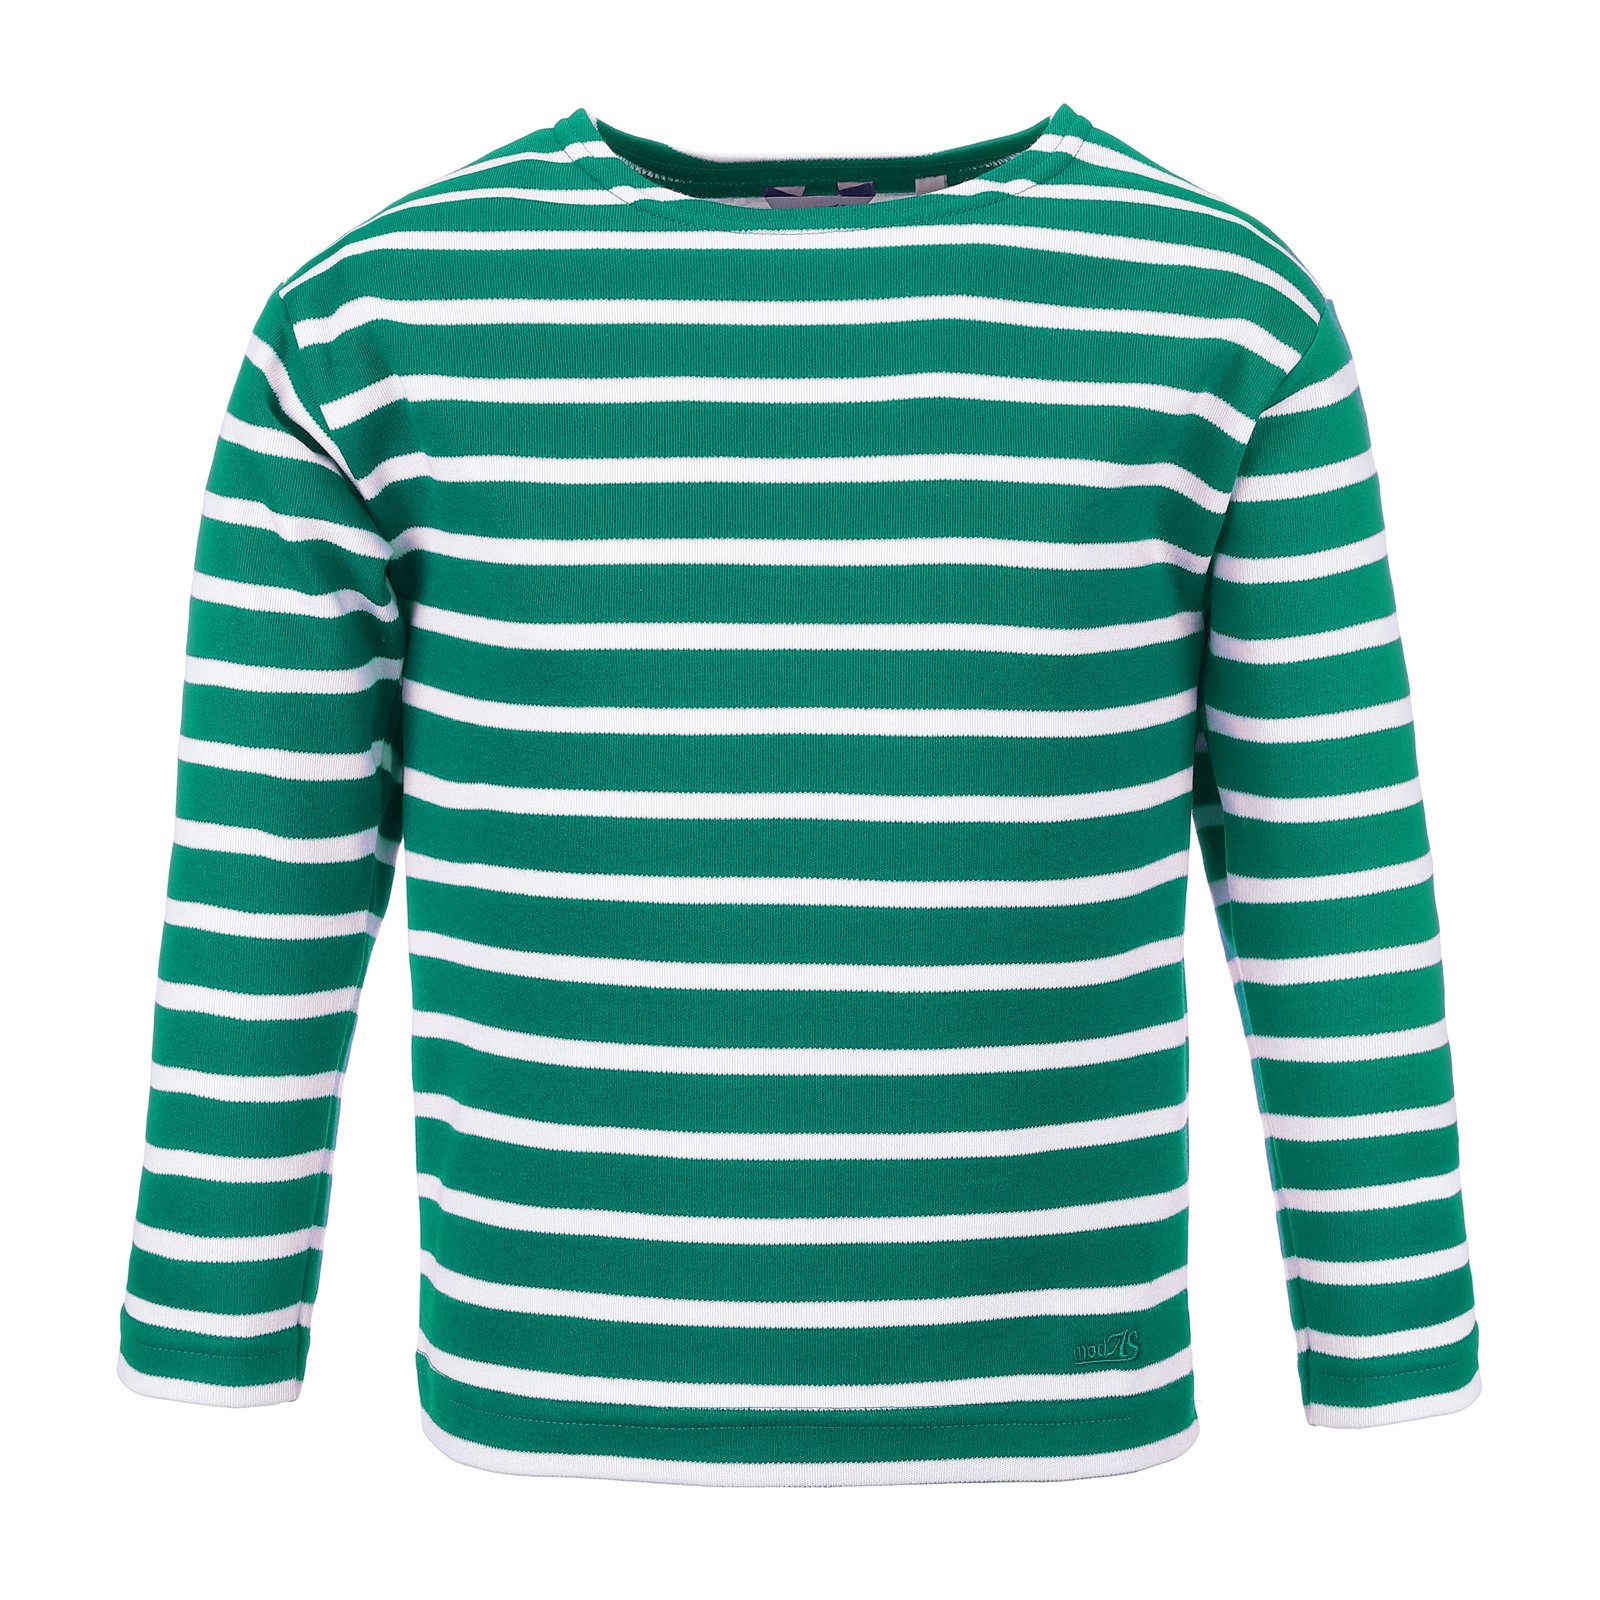 Mode liefern modAS Langarmshirt / Kinder mit (63) Jungen smaragd Longsleeve weiß Streifen Mädchen für Bretonisches Shirt